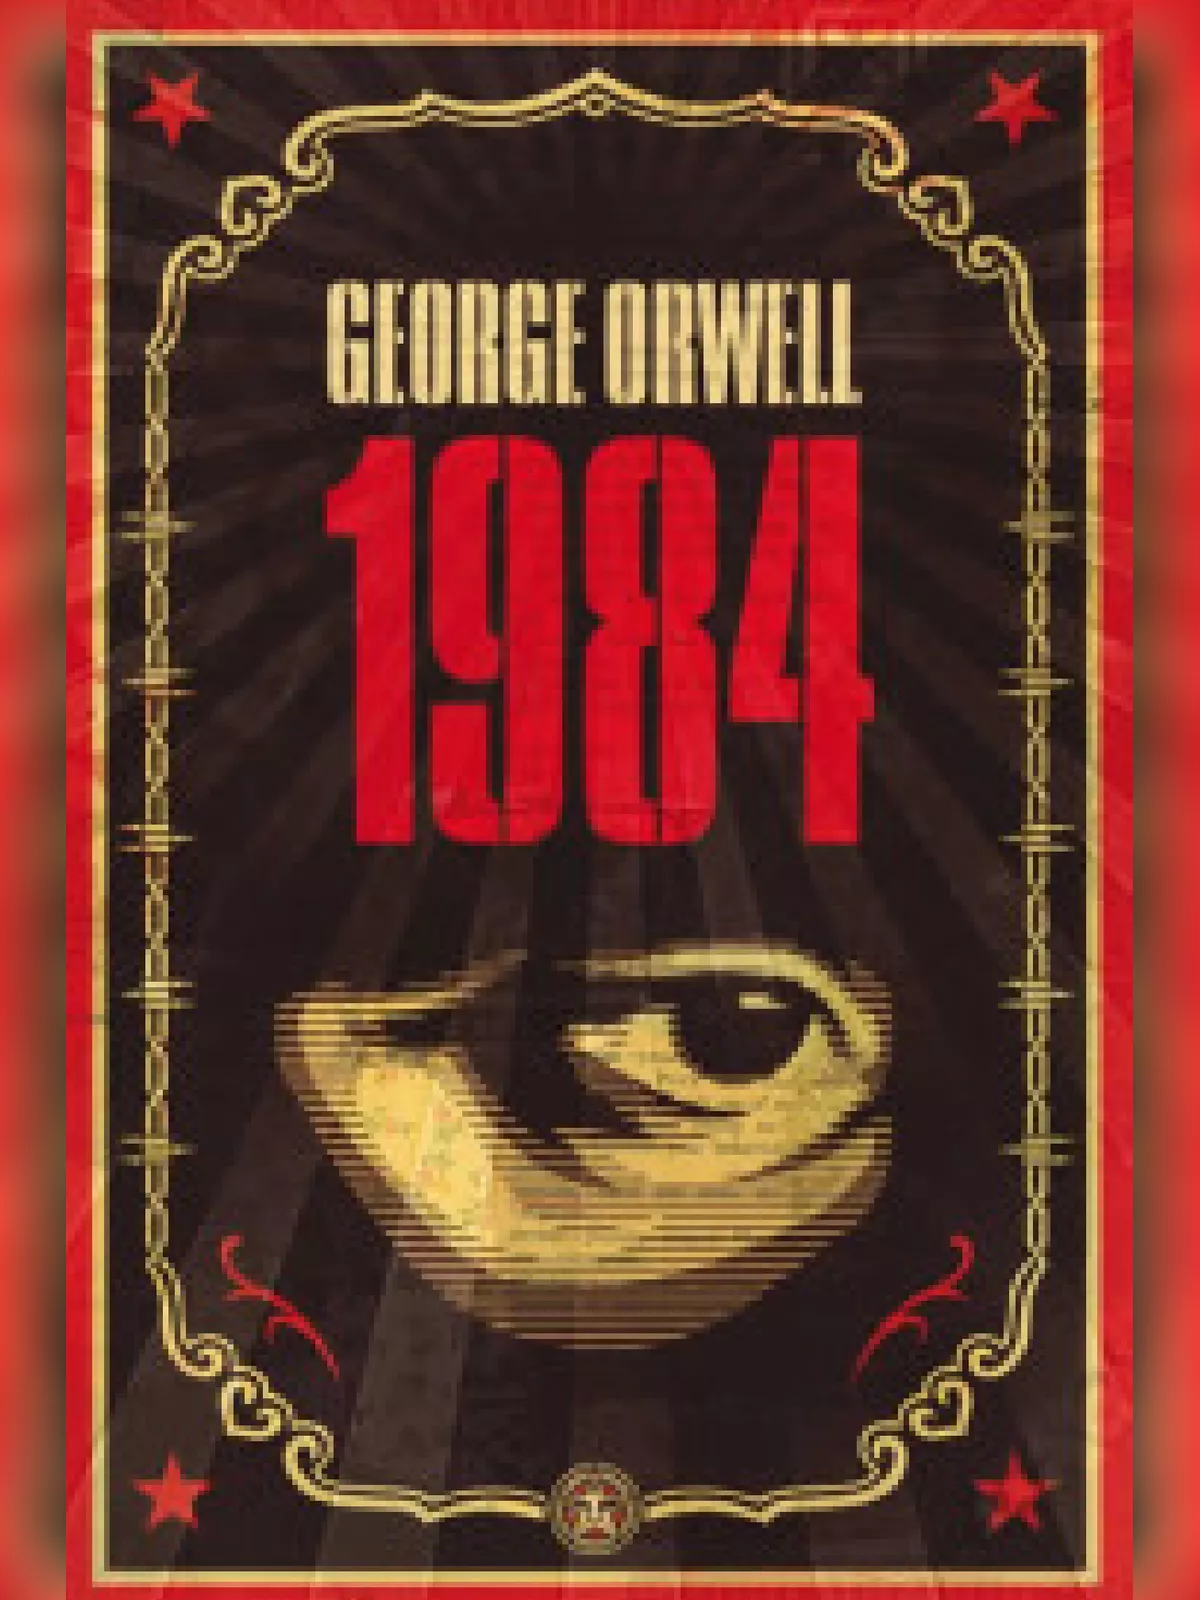 1984 Book